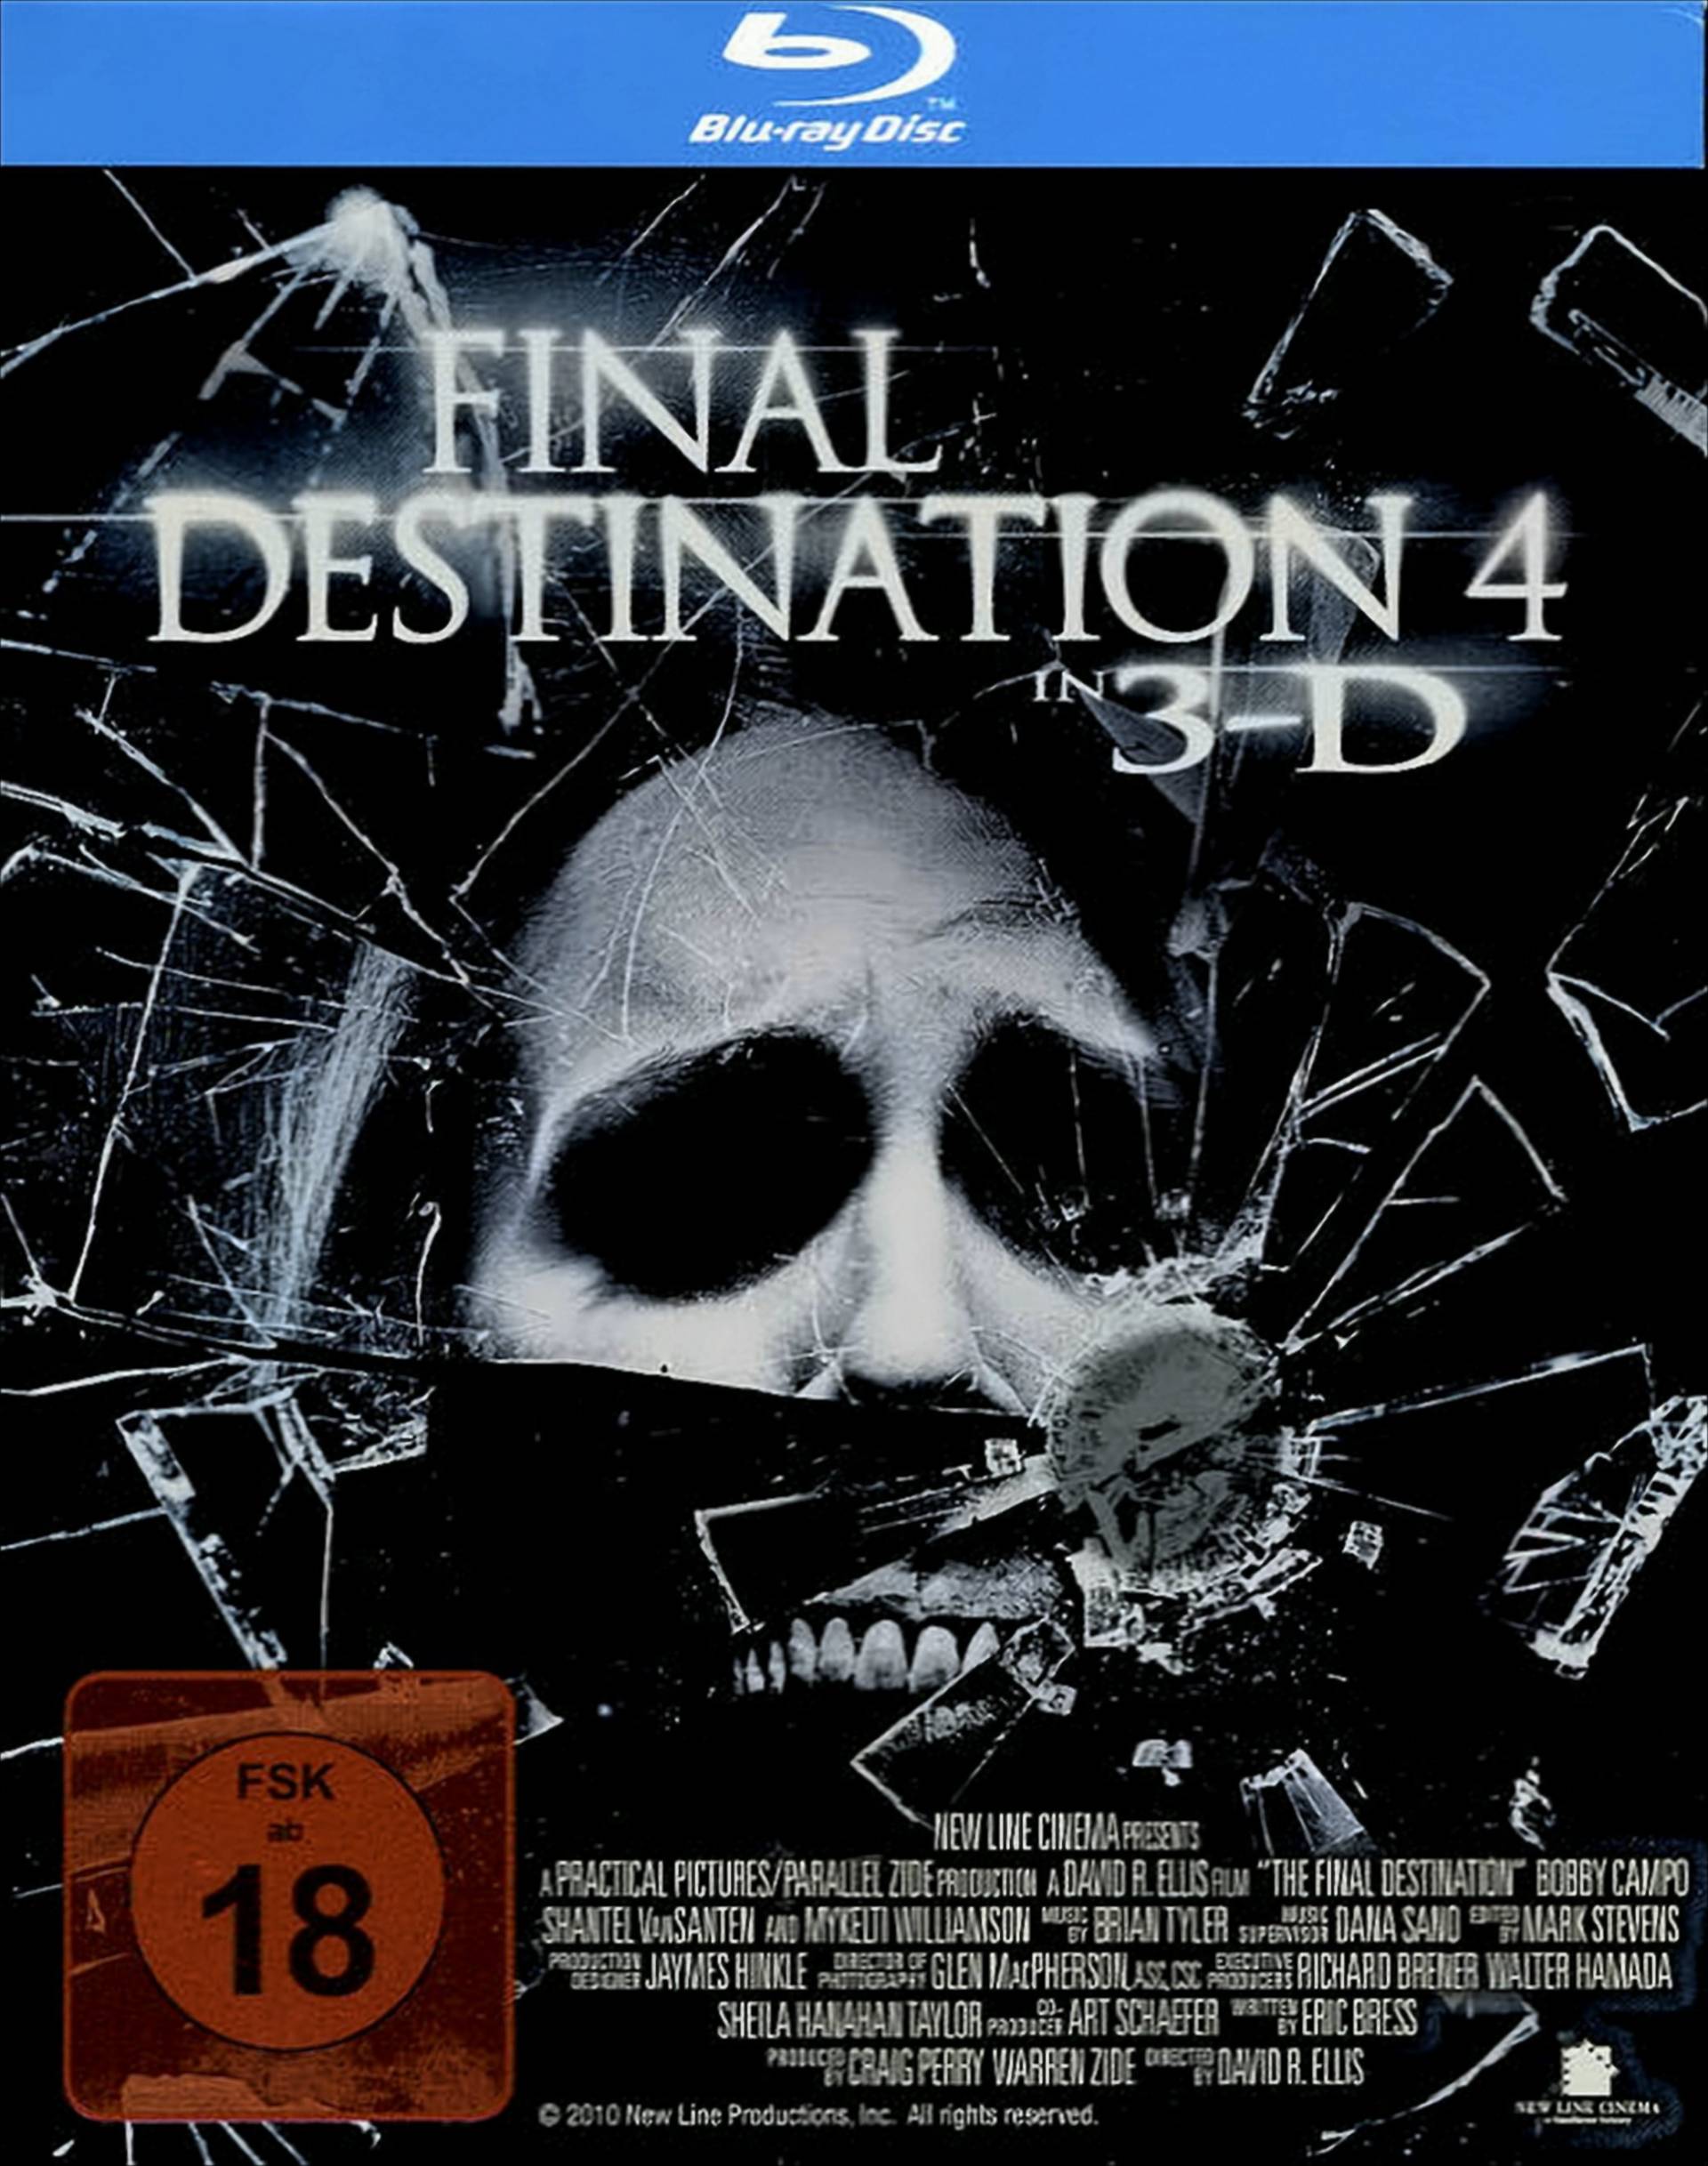 Final Destination 4 Steelbook von Warner Home Video